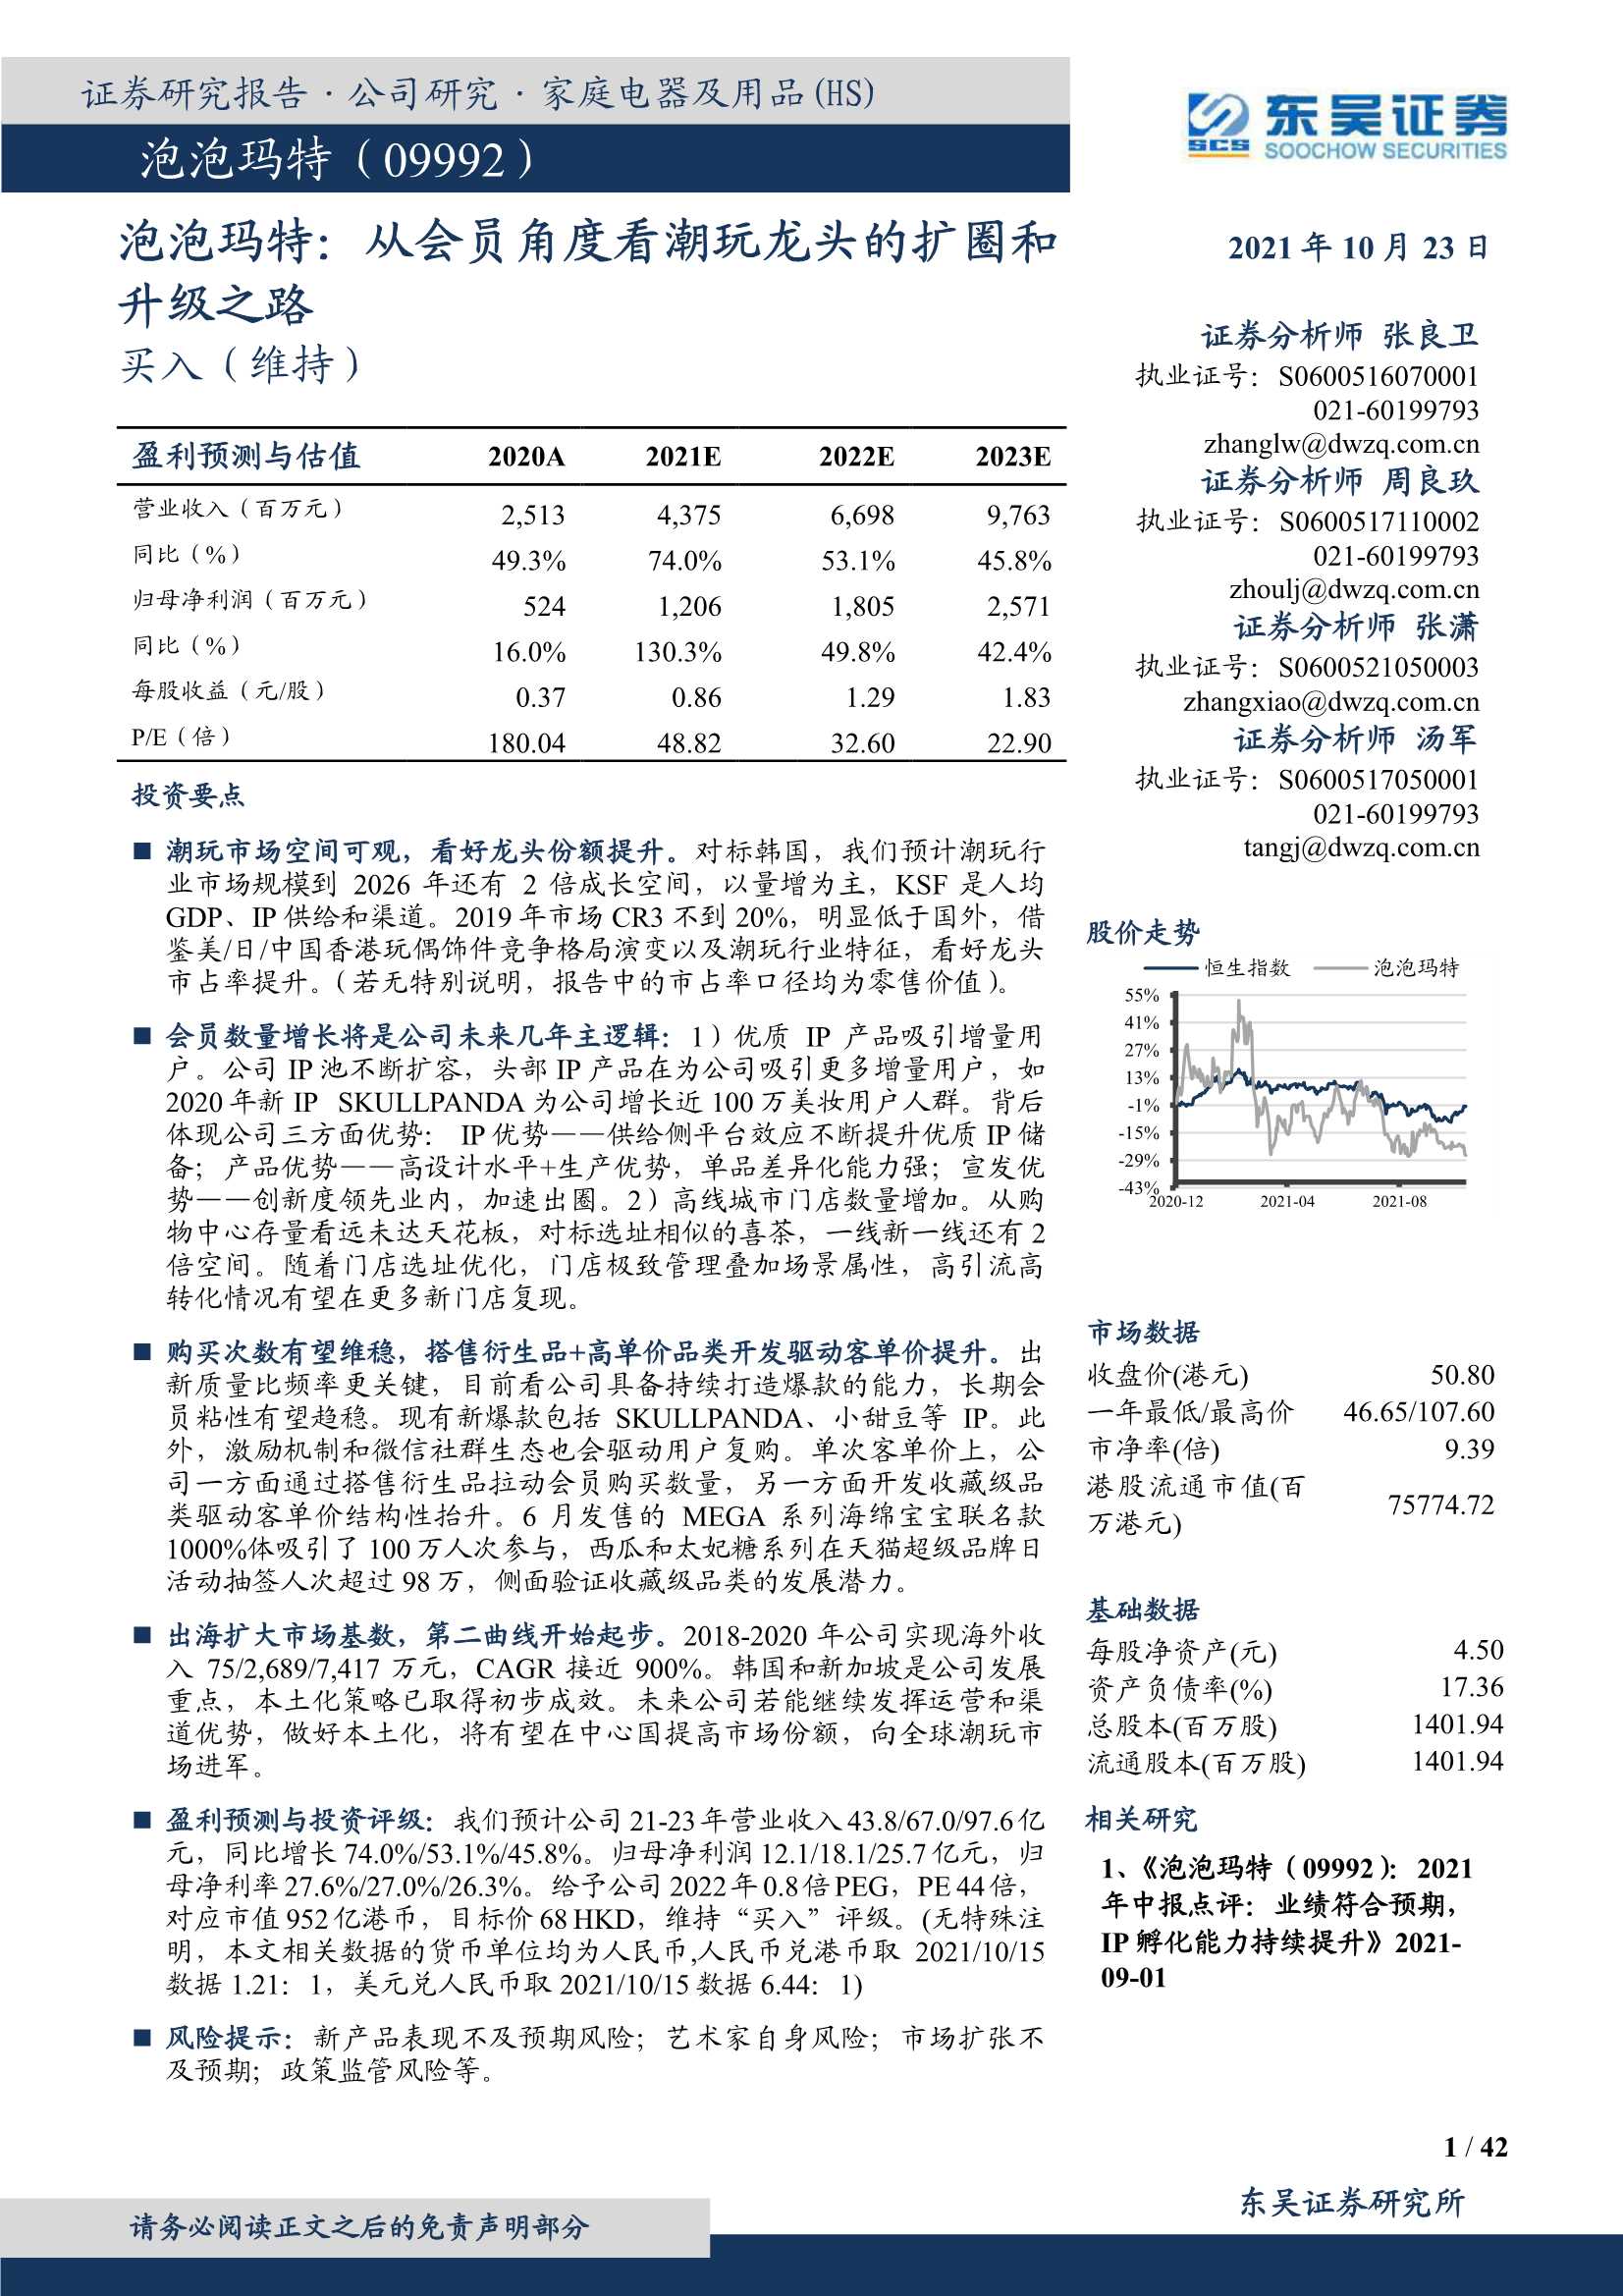 东吴证券-泡泡玛特-9992.HK-从会员角度看潮玩龙头的扩圈和升级之路-20211023-42页